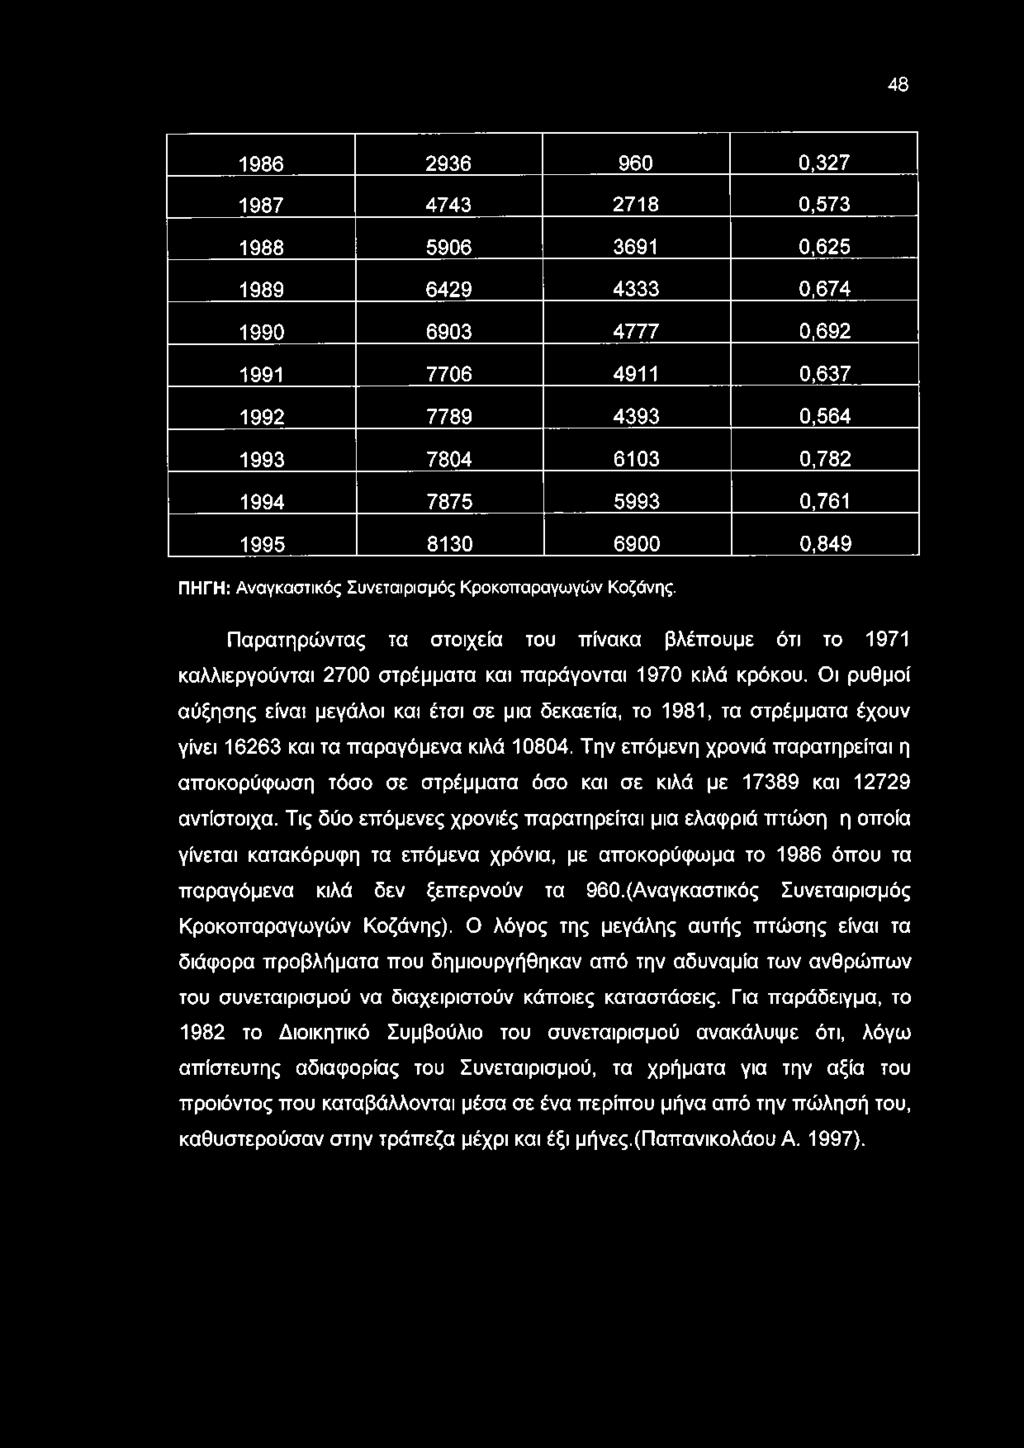 Οι ρυθμοί αύξησης είναι μεγάλοι και έτσι σε μια δεκαετία, το 1981, τα στρέμματα έχουν γίνει 16263 και τα παραγόμενα κιλά 10804.